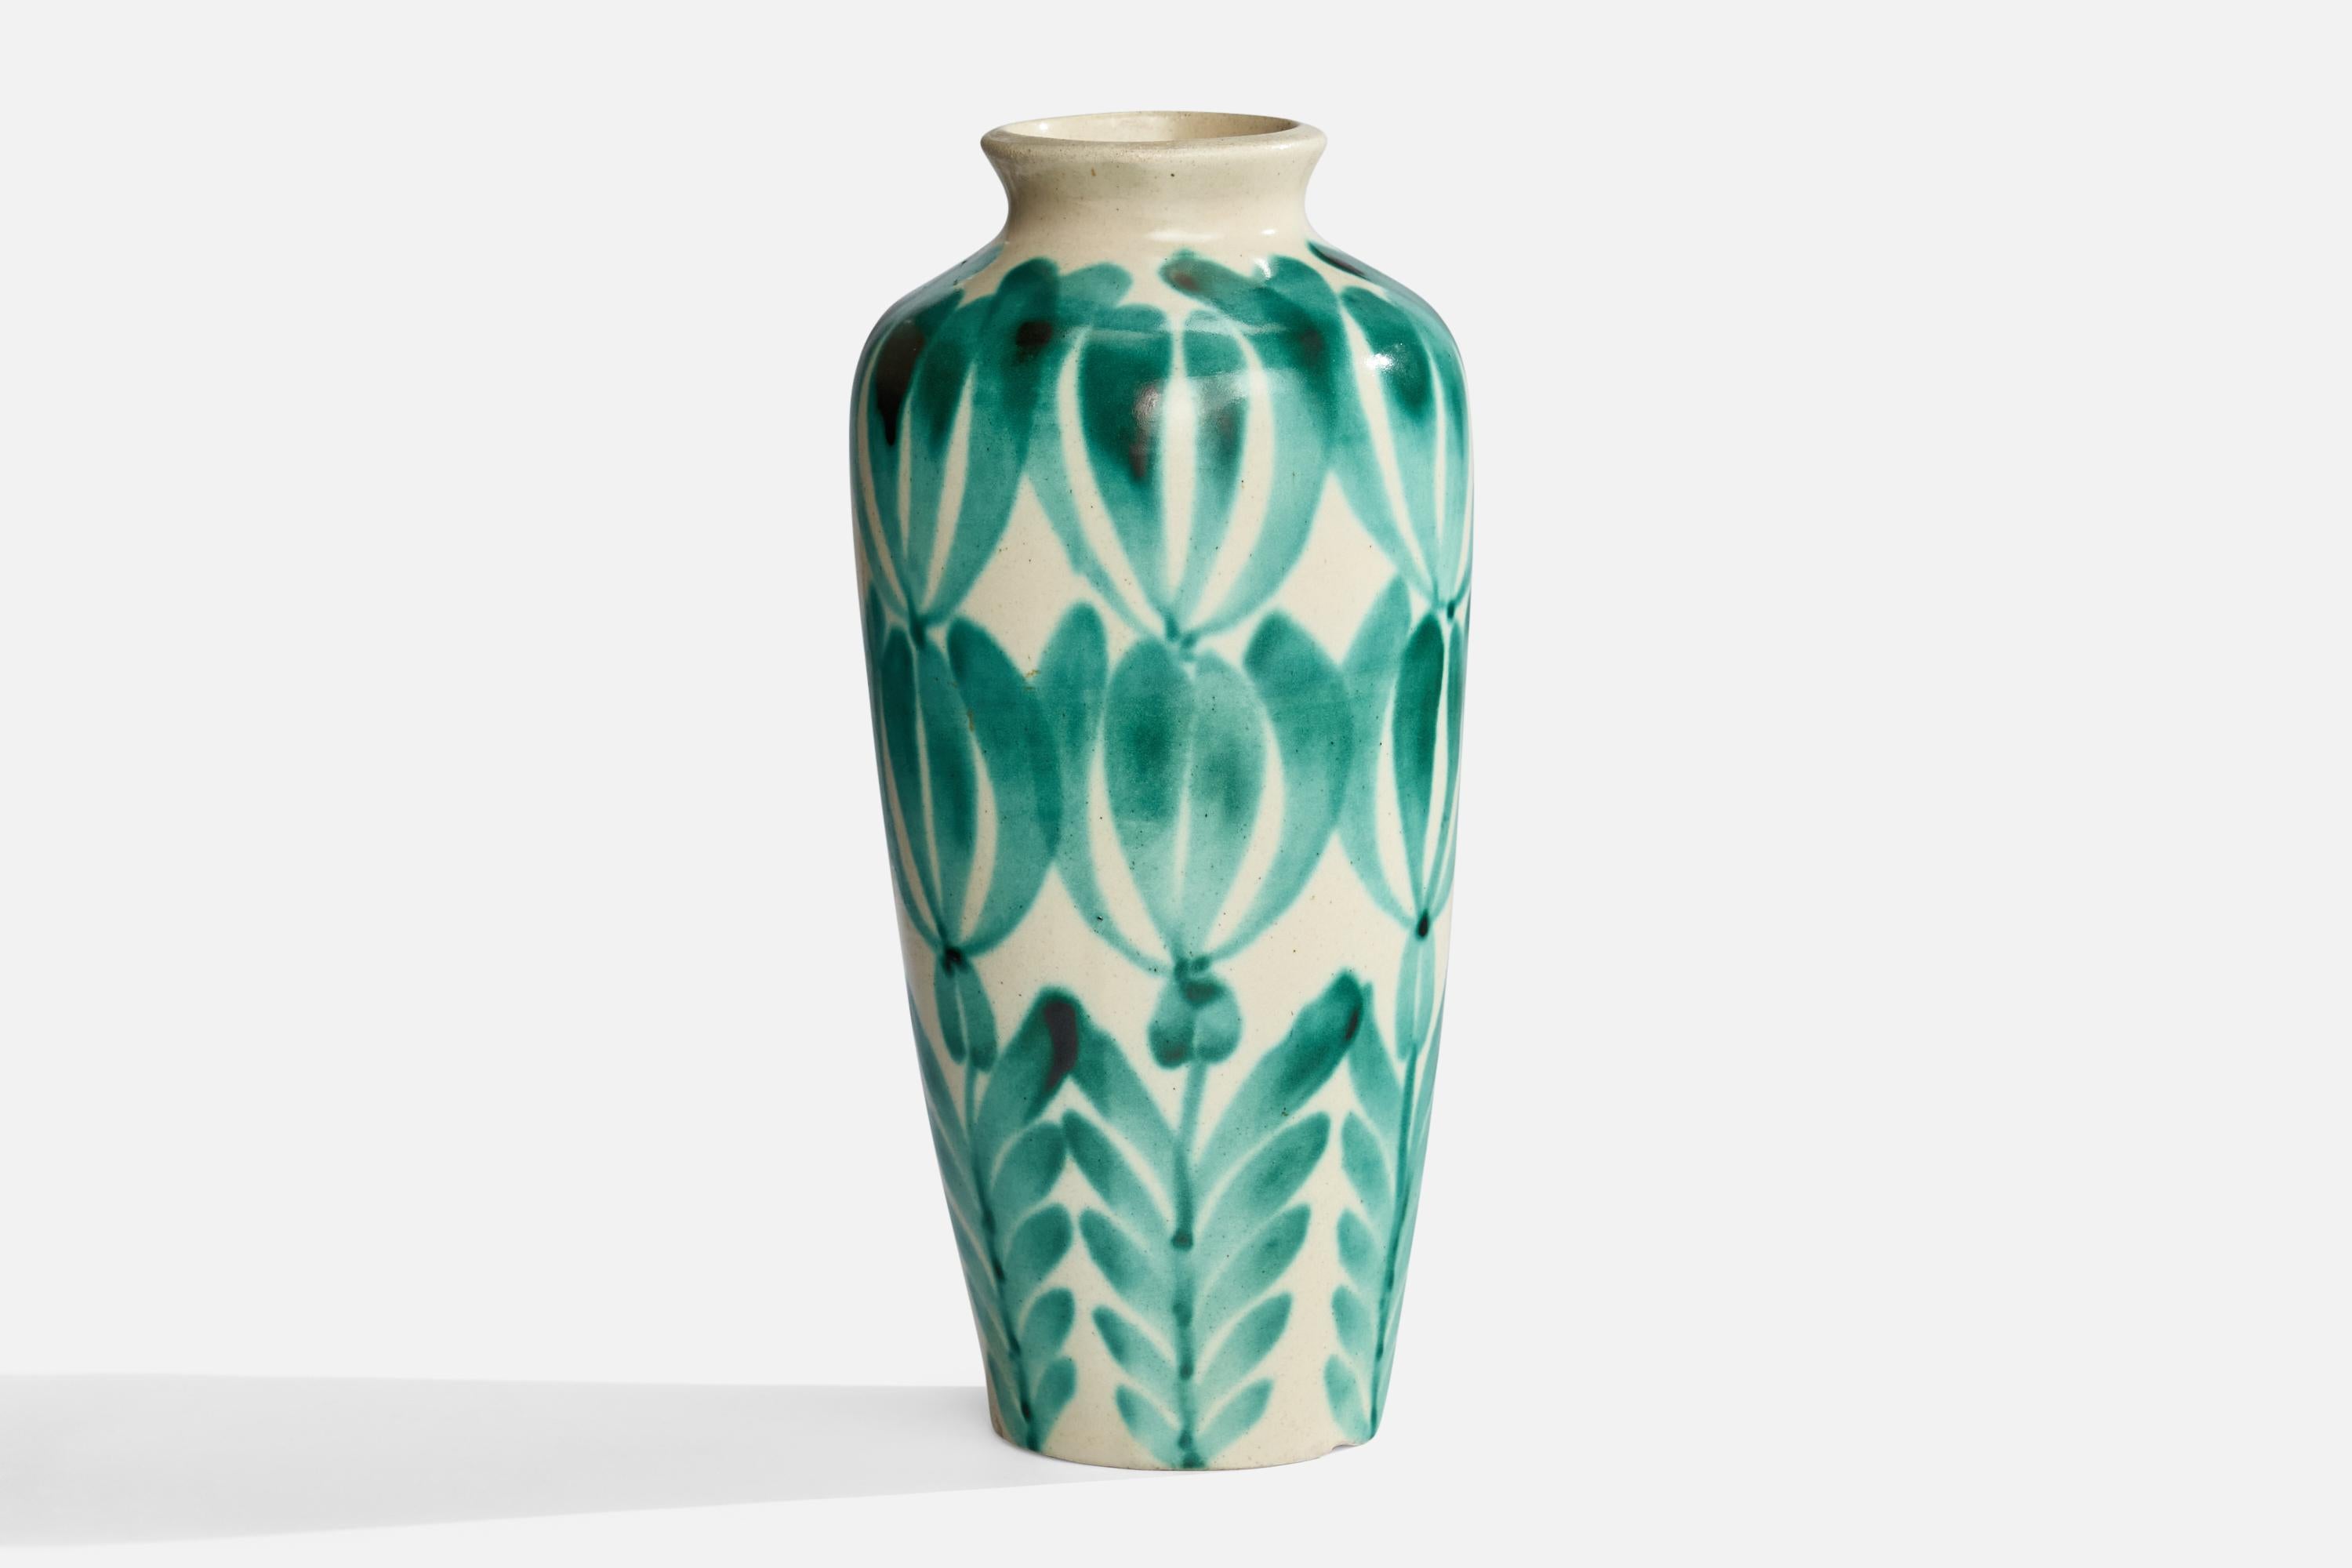 Vase vert et blanc cassé peint à la main, conçu et produit en Suède, années 1940.